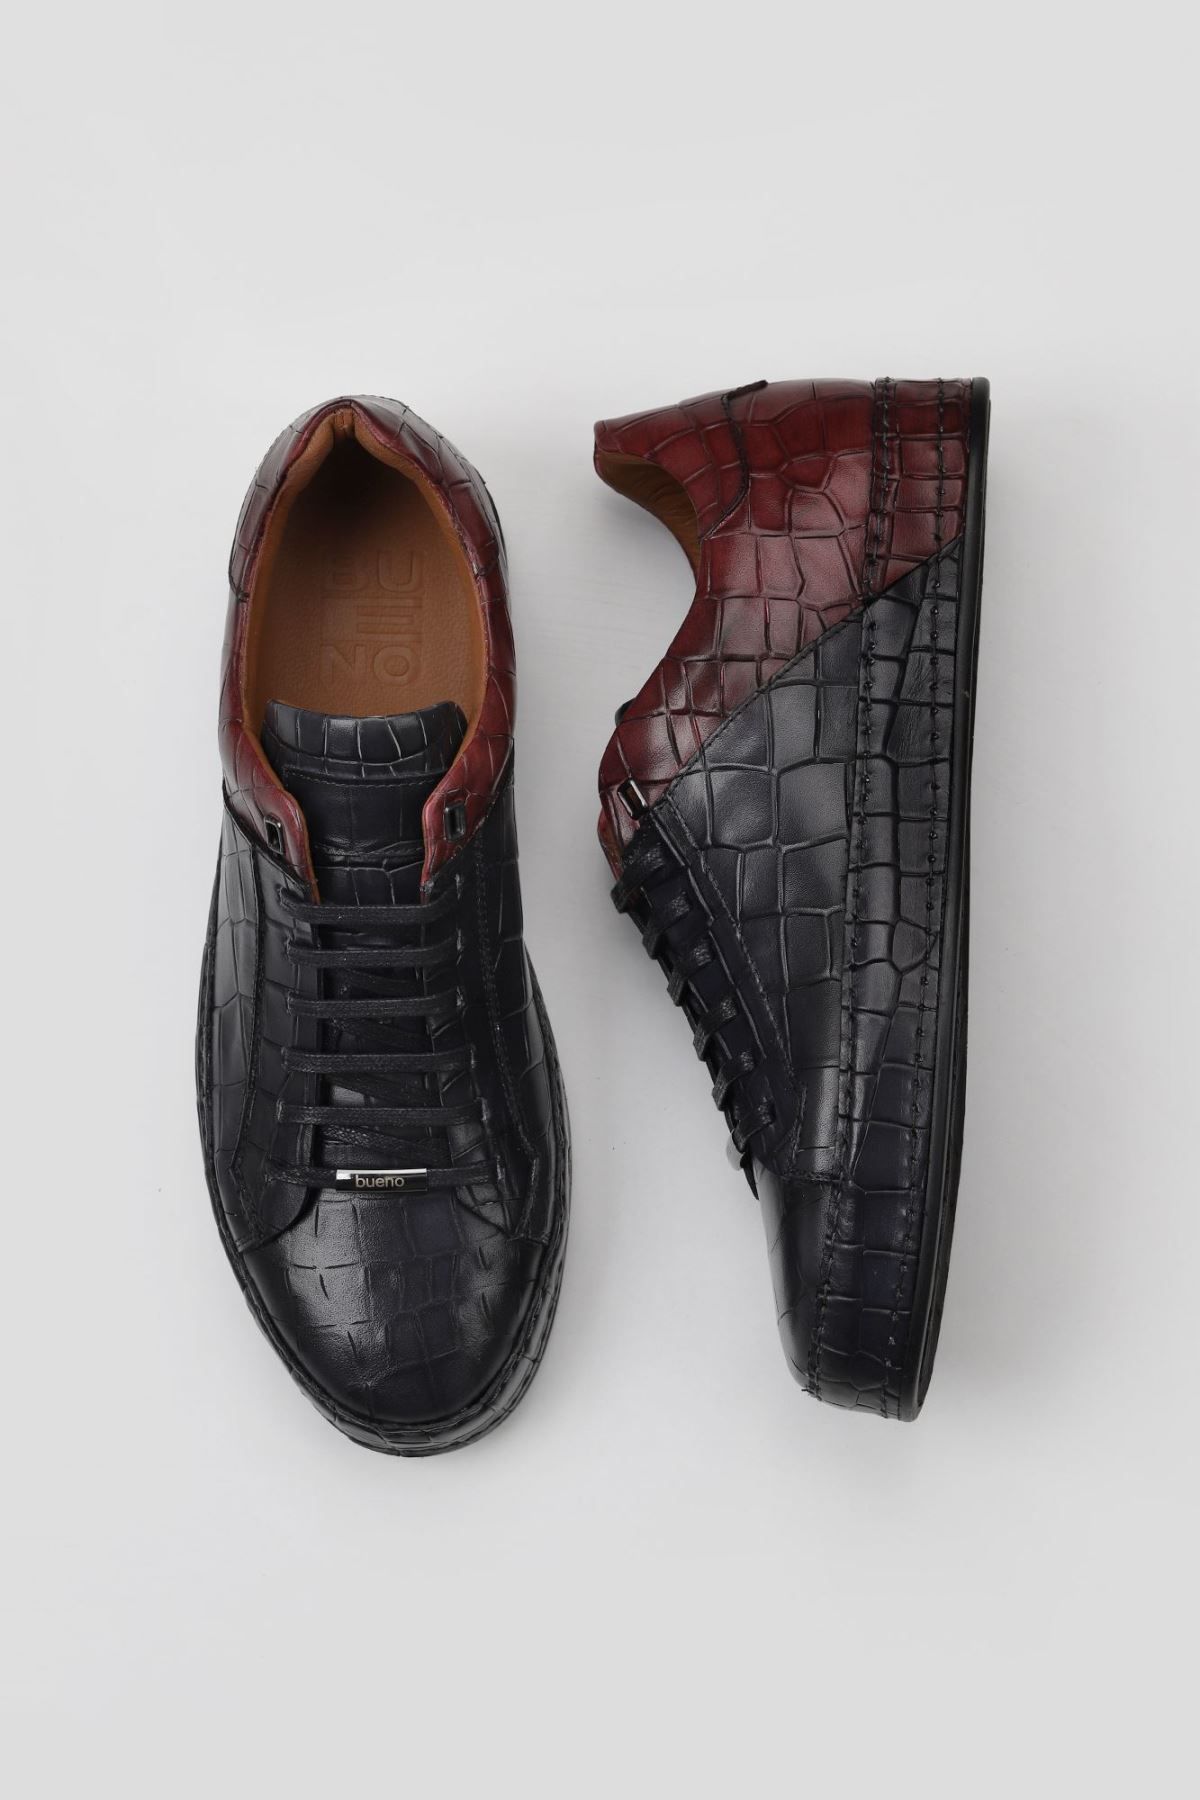 Bueno Shoes Siyah Kırmızı Kroko Erkek Spor Ayakkabı